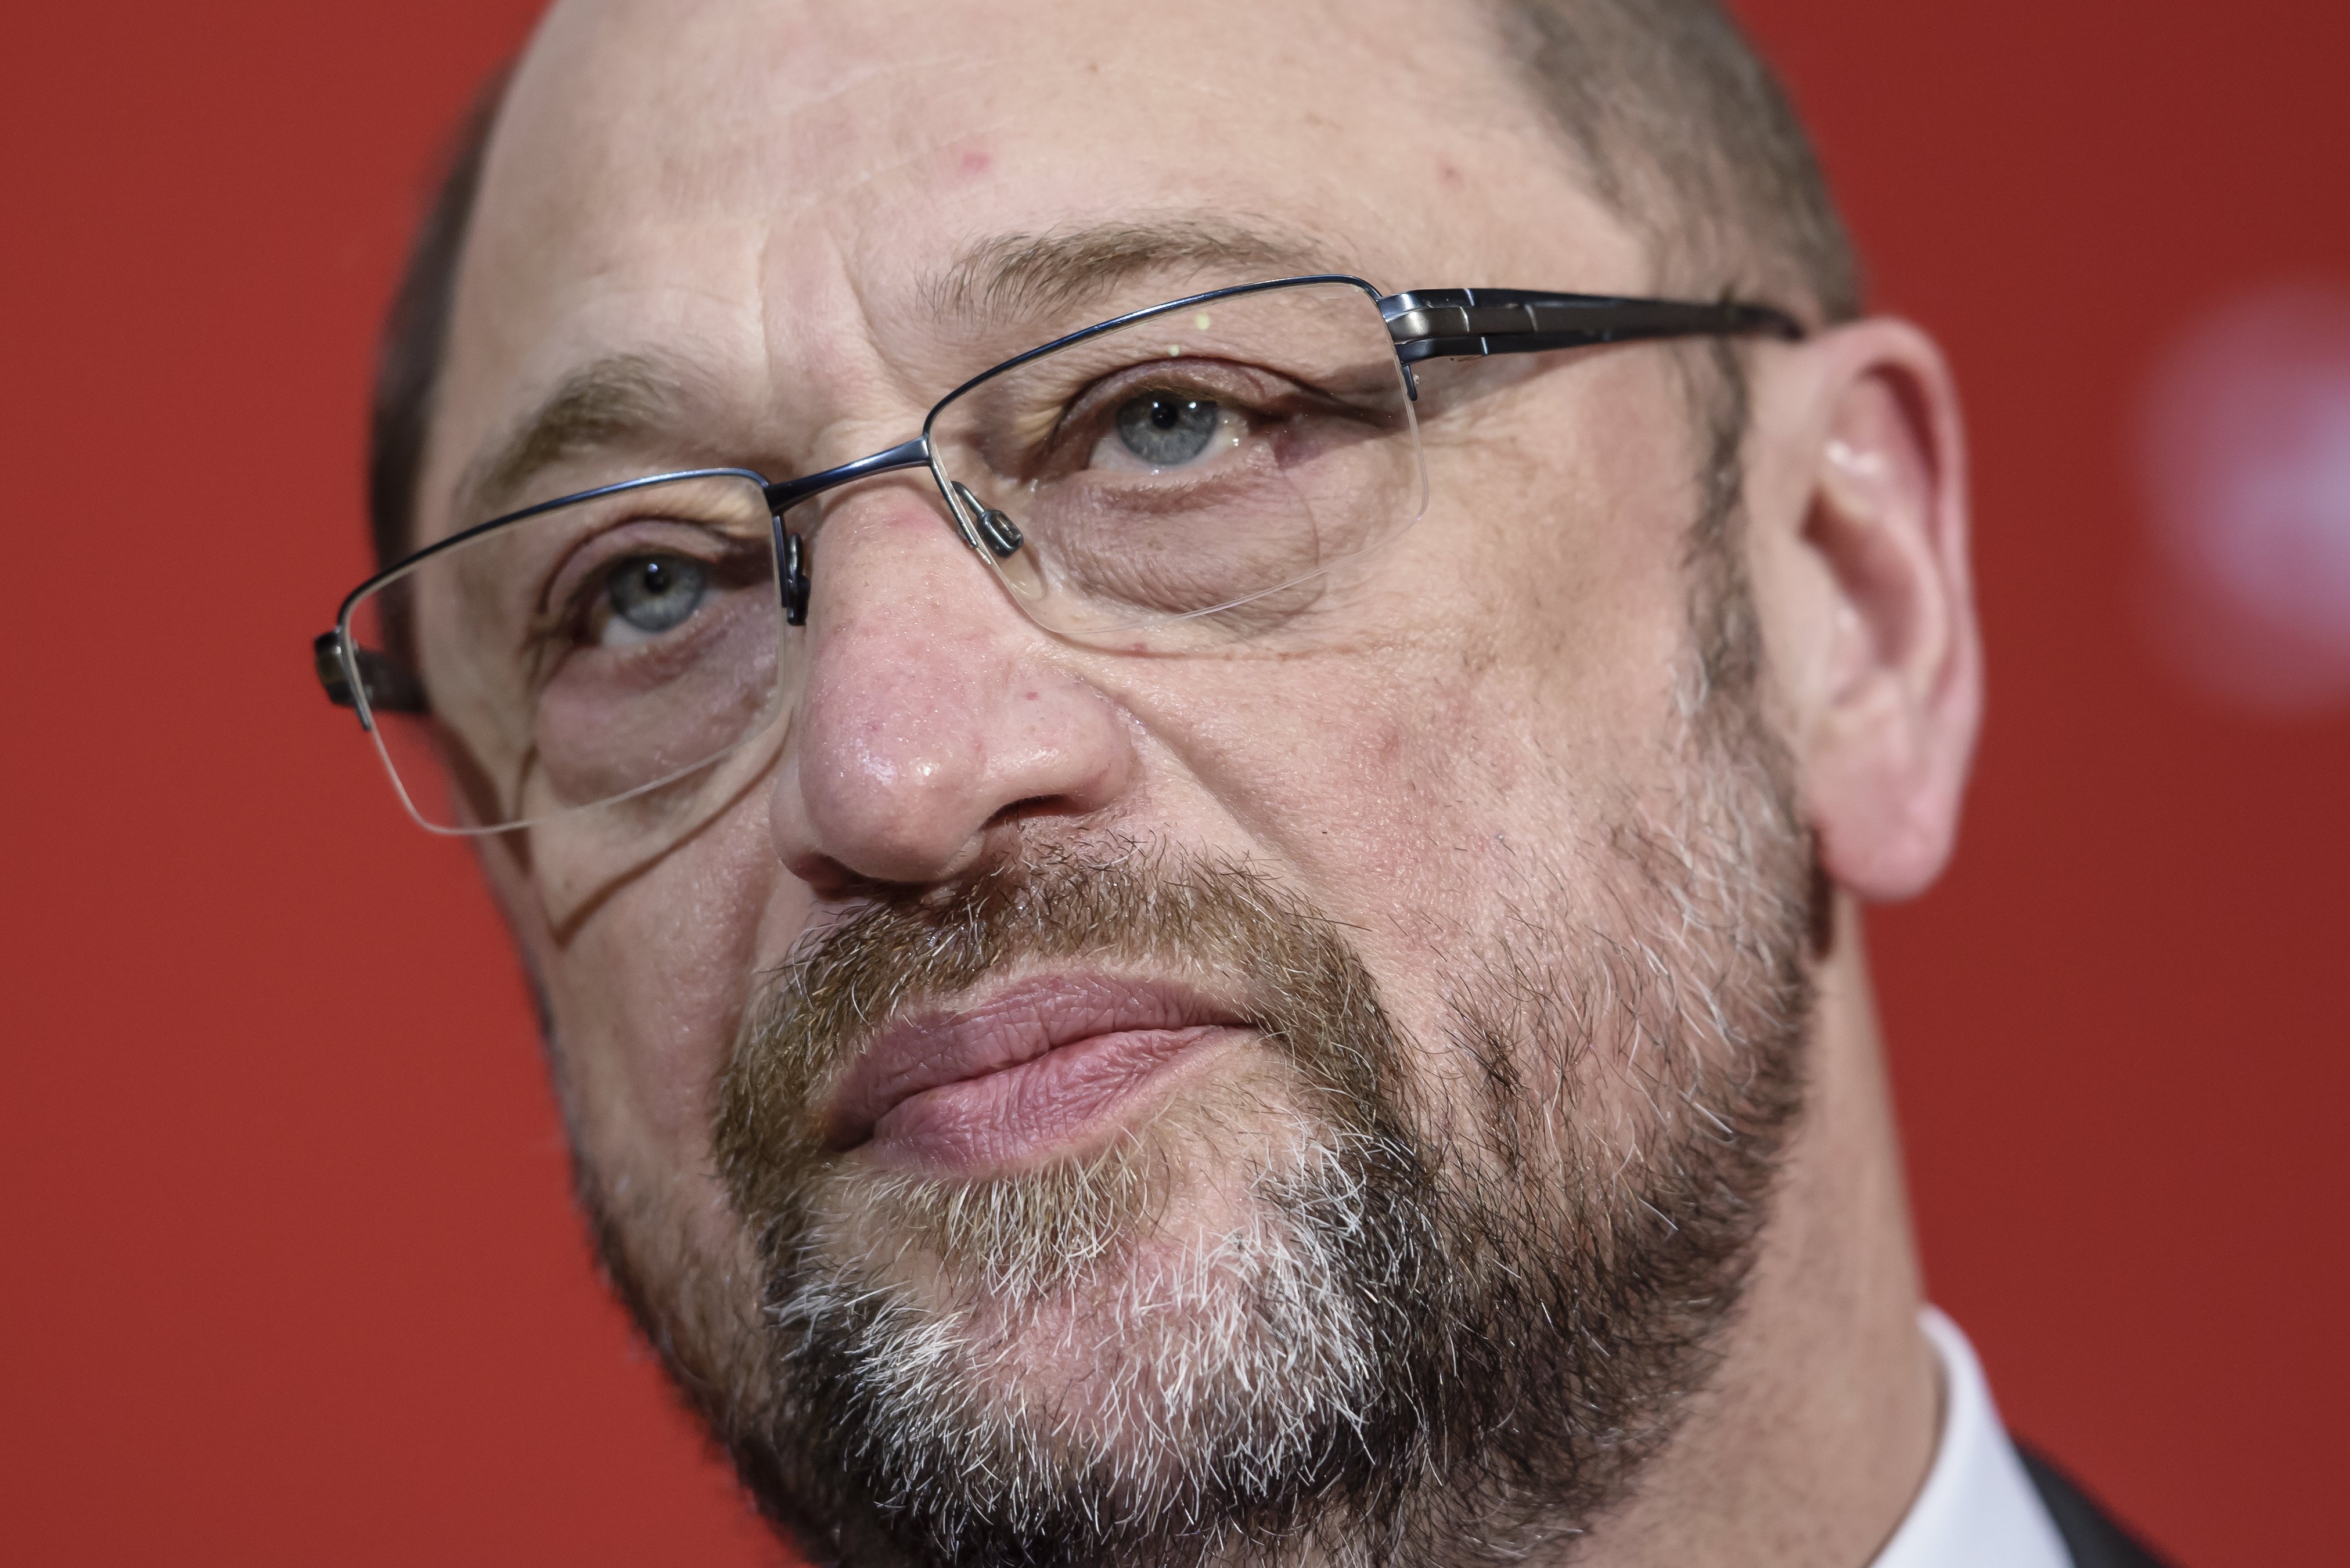 «Μη χαίρεστε από τώρα» λέει ο Σουλτς στο CDU μετά την ήττα στο Ζάαρλαντ